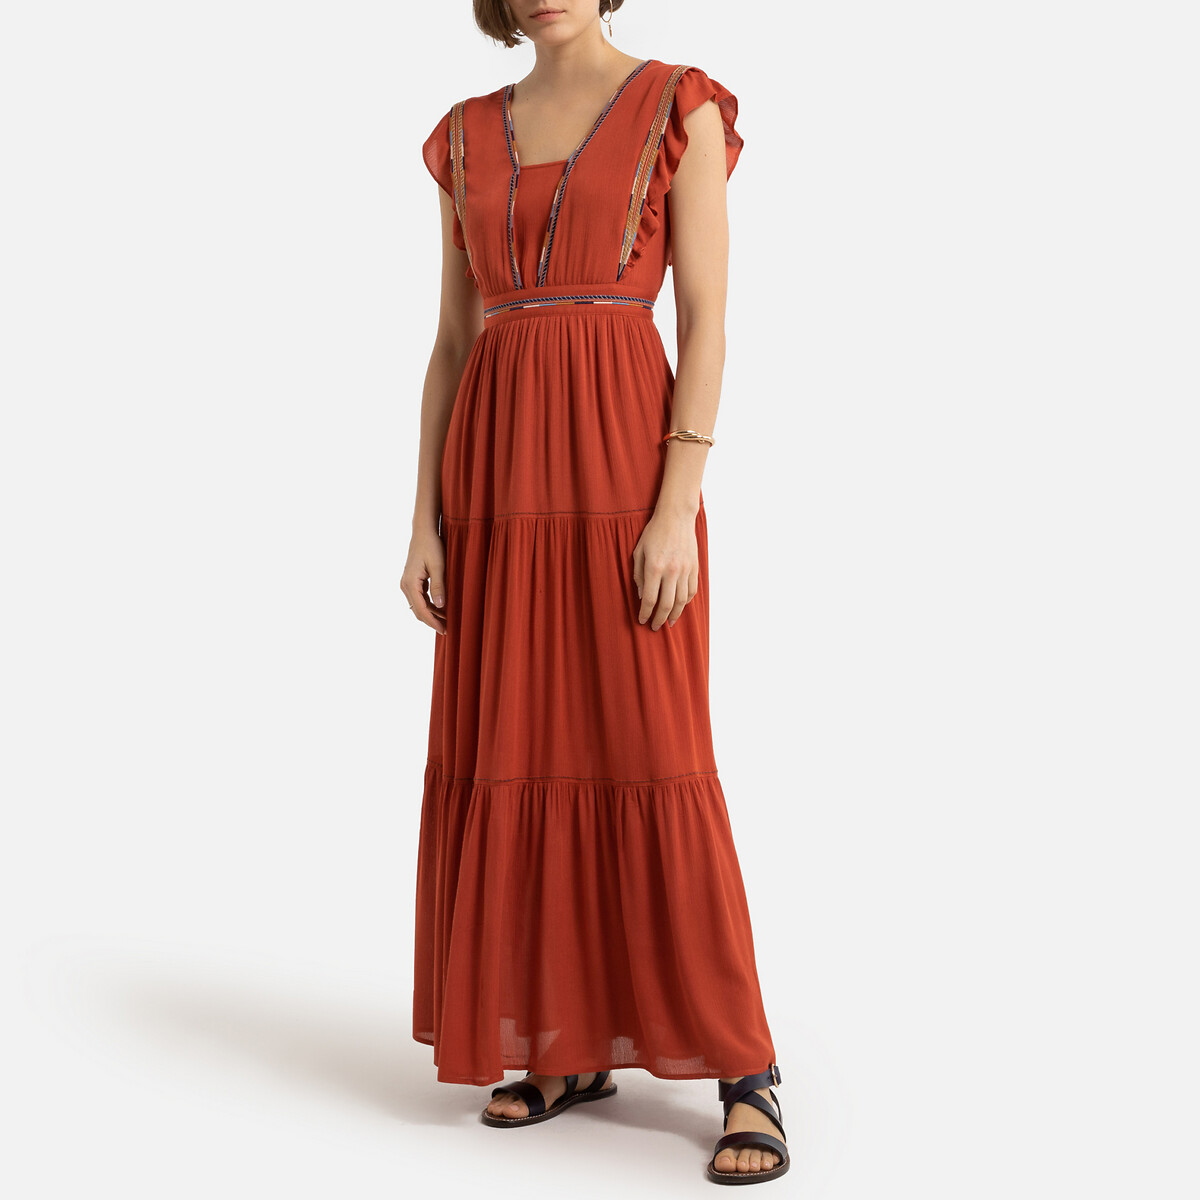 Платье LaRedoute Длинное V-образный вырез короткие рукава 0(XS) оранжевый, размер 0(XS) Длинное V-образный вырез короткие рукава 0(XS) оранжевый - фото 1